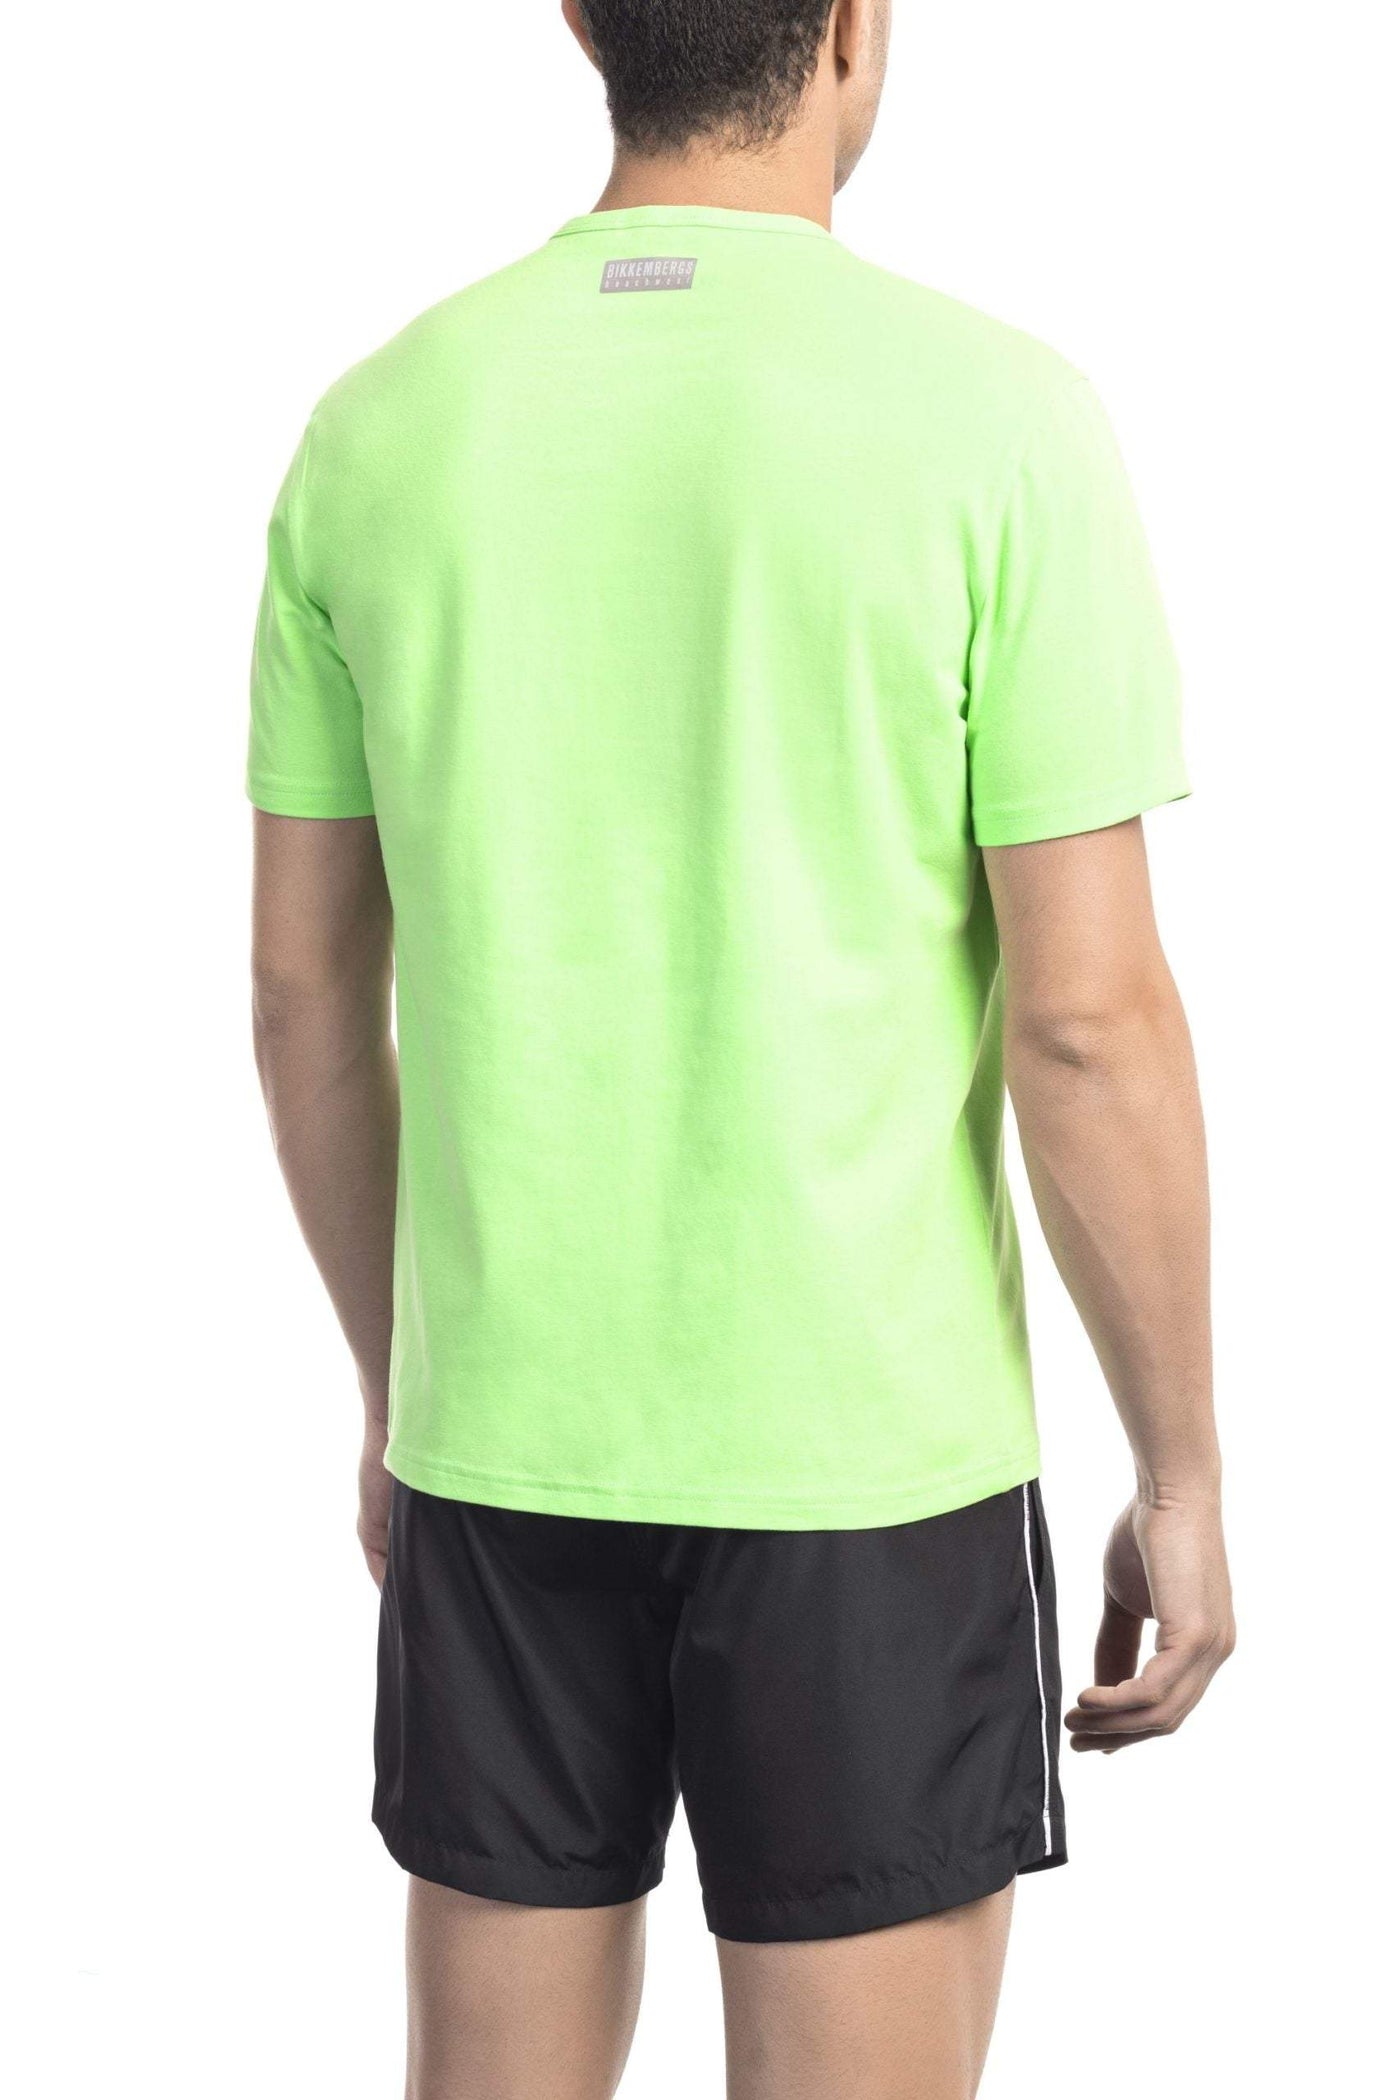 Bikkembergs Green Cotton T-Shirt #men, Bikkembergs, feed-1, Green, L, M, S, T-Shirts - Men - Clothing at SEYMAYKA